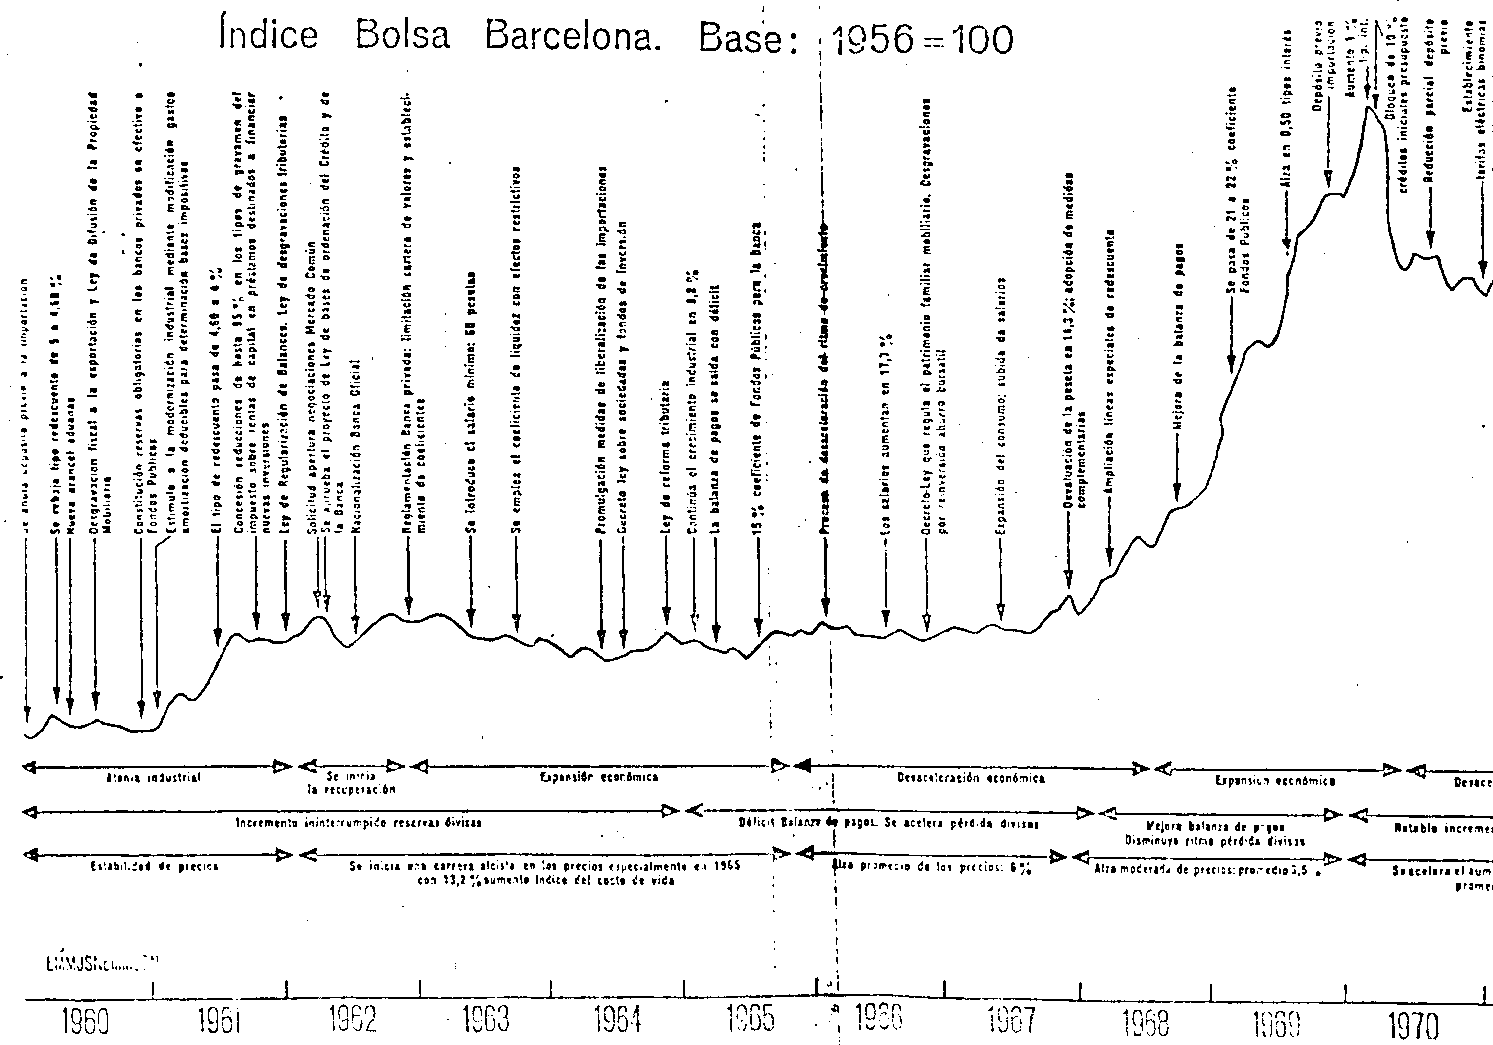 Quadre 2. Índex de la Borsa de Barcelona des de 1960 fins 1970.